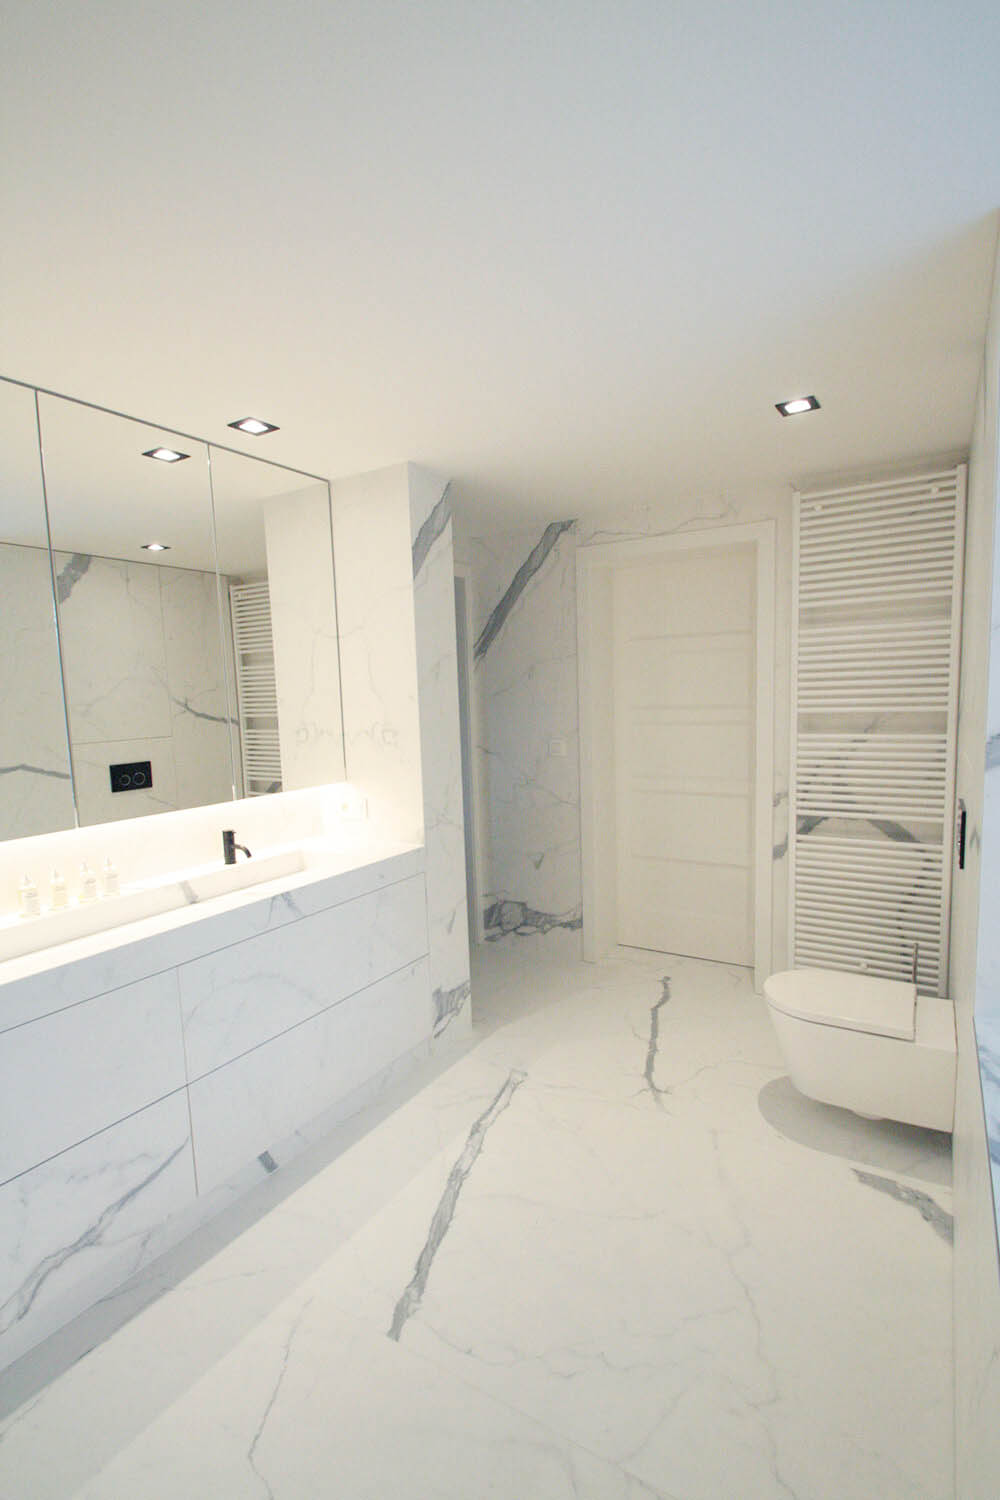 foto van witte moderne badkamer met tegels op de vloer en tegen de muur, ook de kasten werden met dit materiaal afgewerkt. Het gebruikte materiaal heeft een marmer-effect